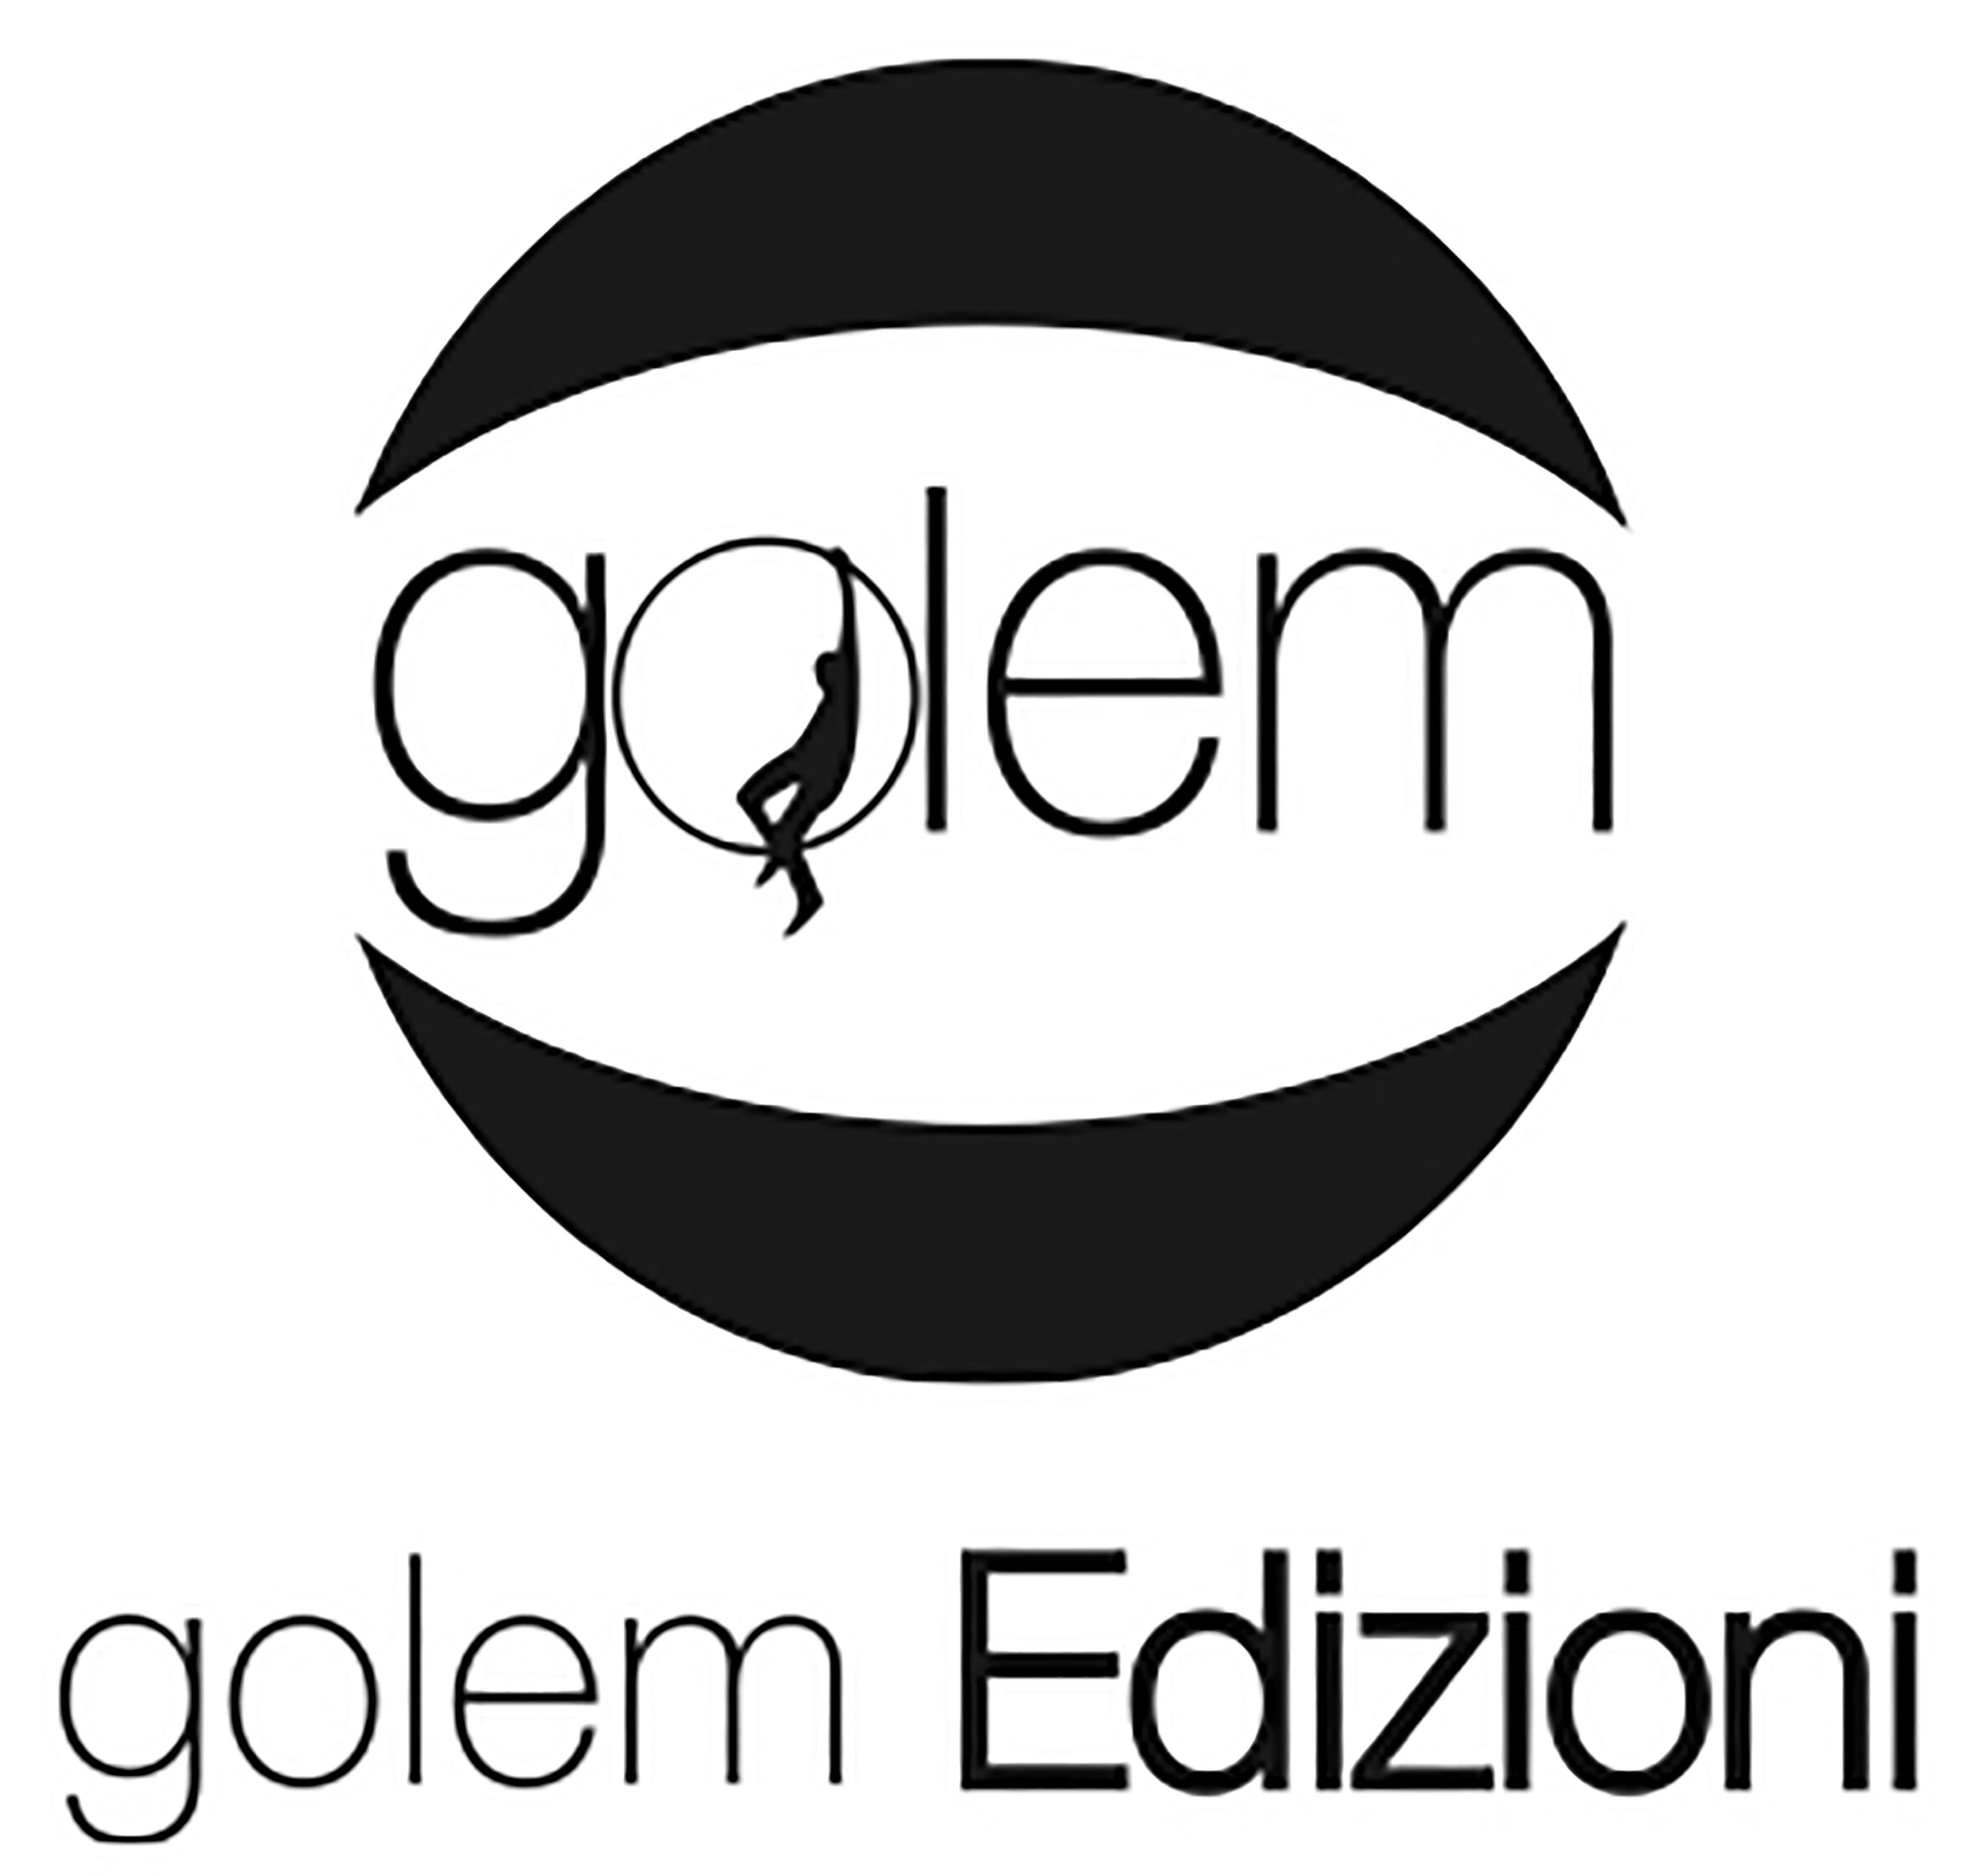 Golem Edizioni